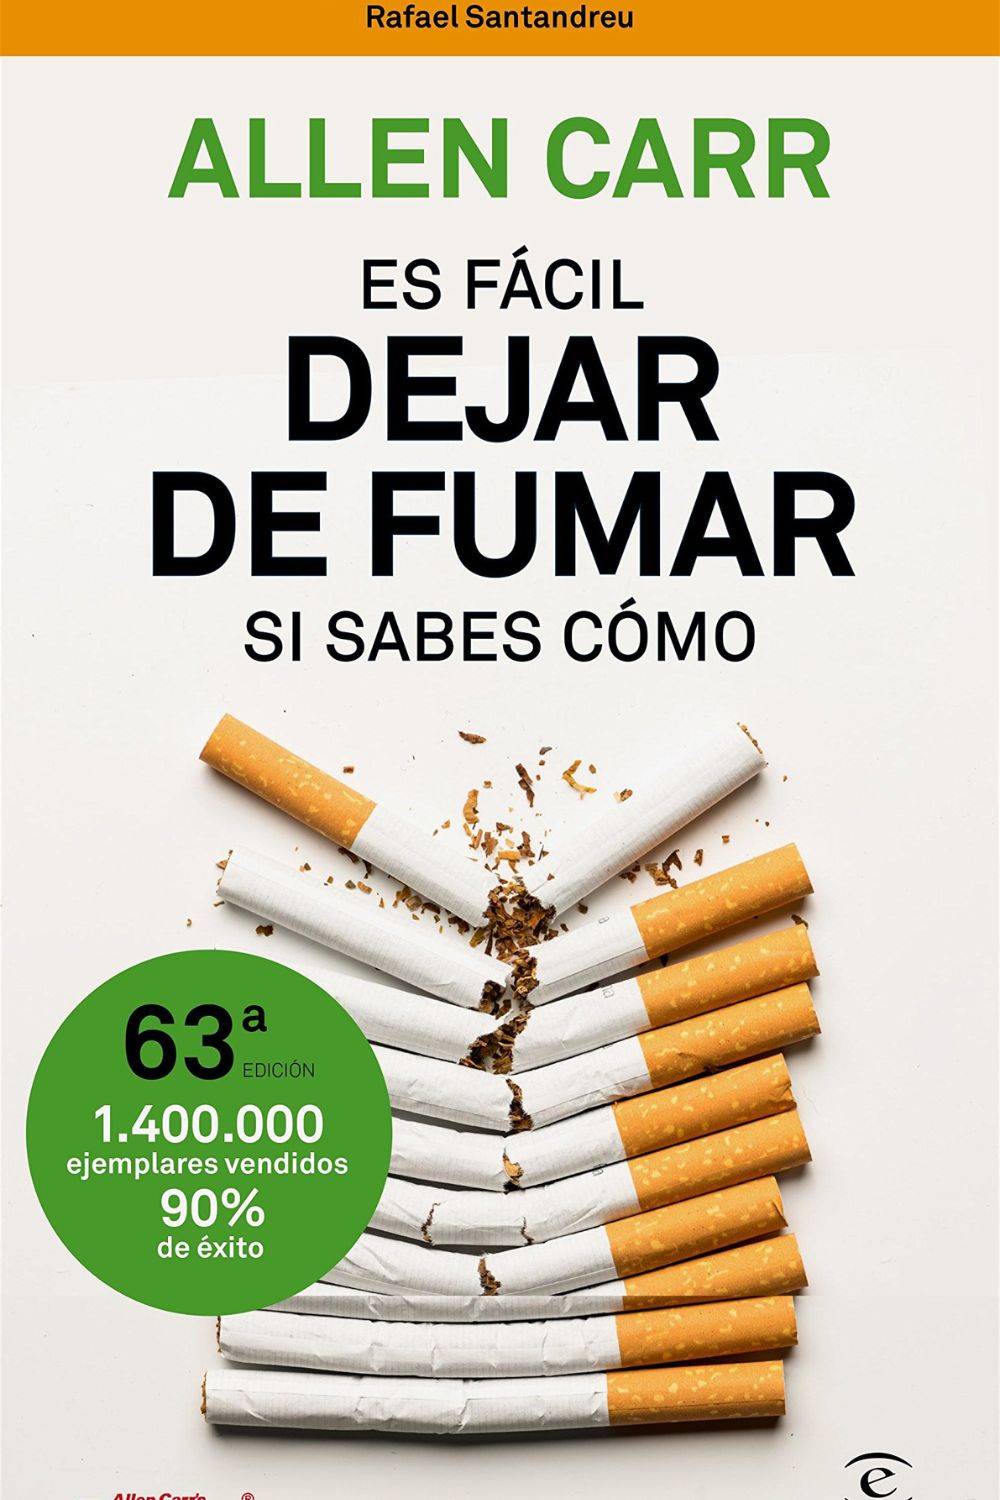 DEJAR DE FUMAR ES FÁCIL SI SABES CÓMO